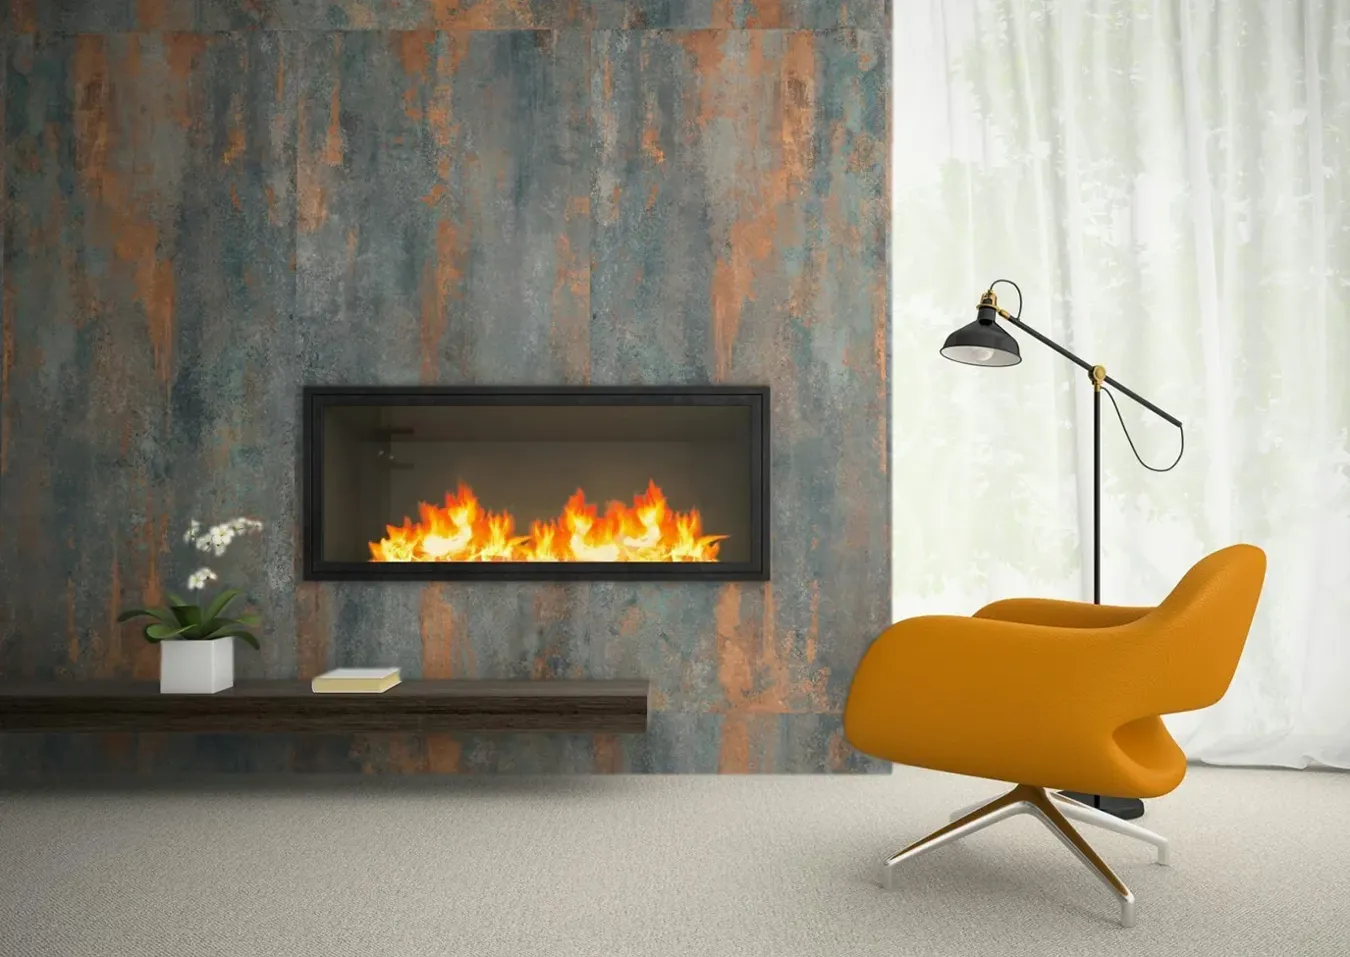 Gemütliches Wohnzimmer mit Kamin in Precious Gold Metalleffekt-Fliesen, modernem gelben Sessel und schicker Stehlampe